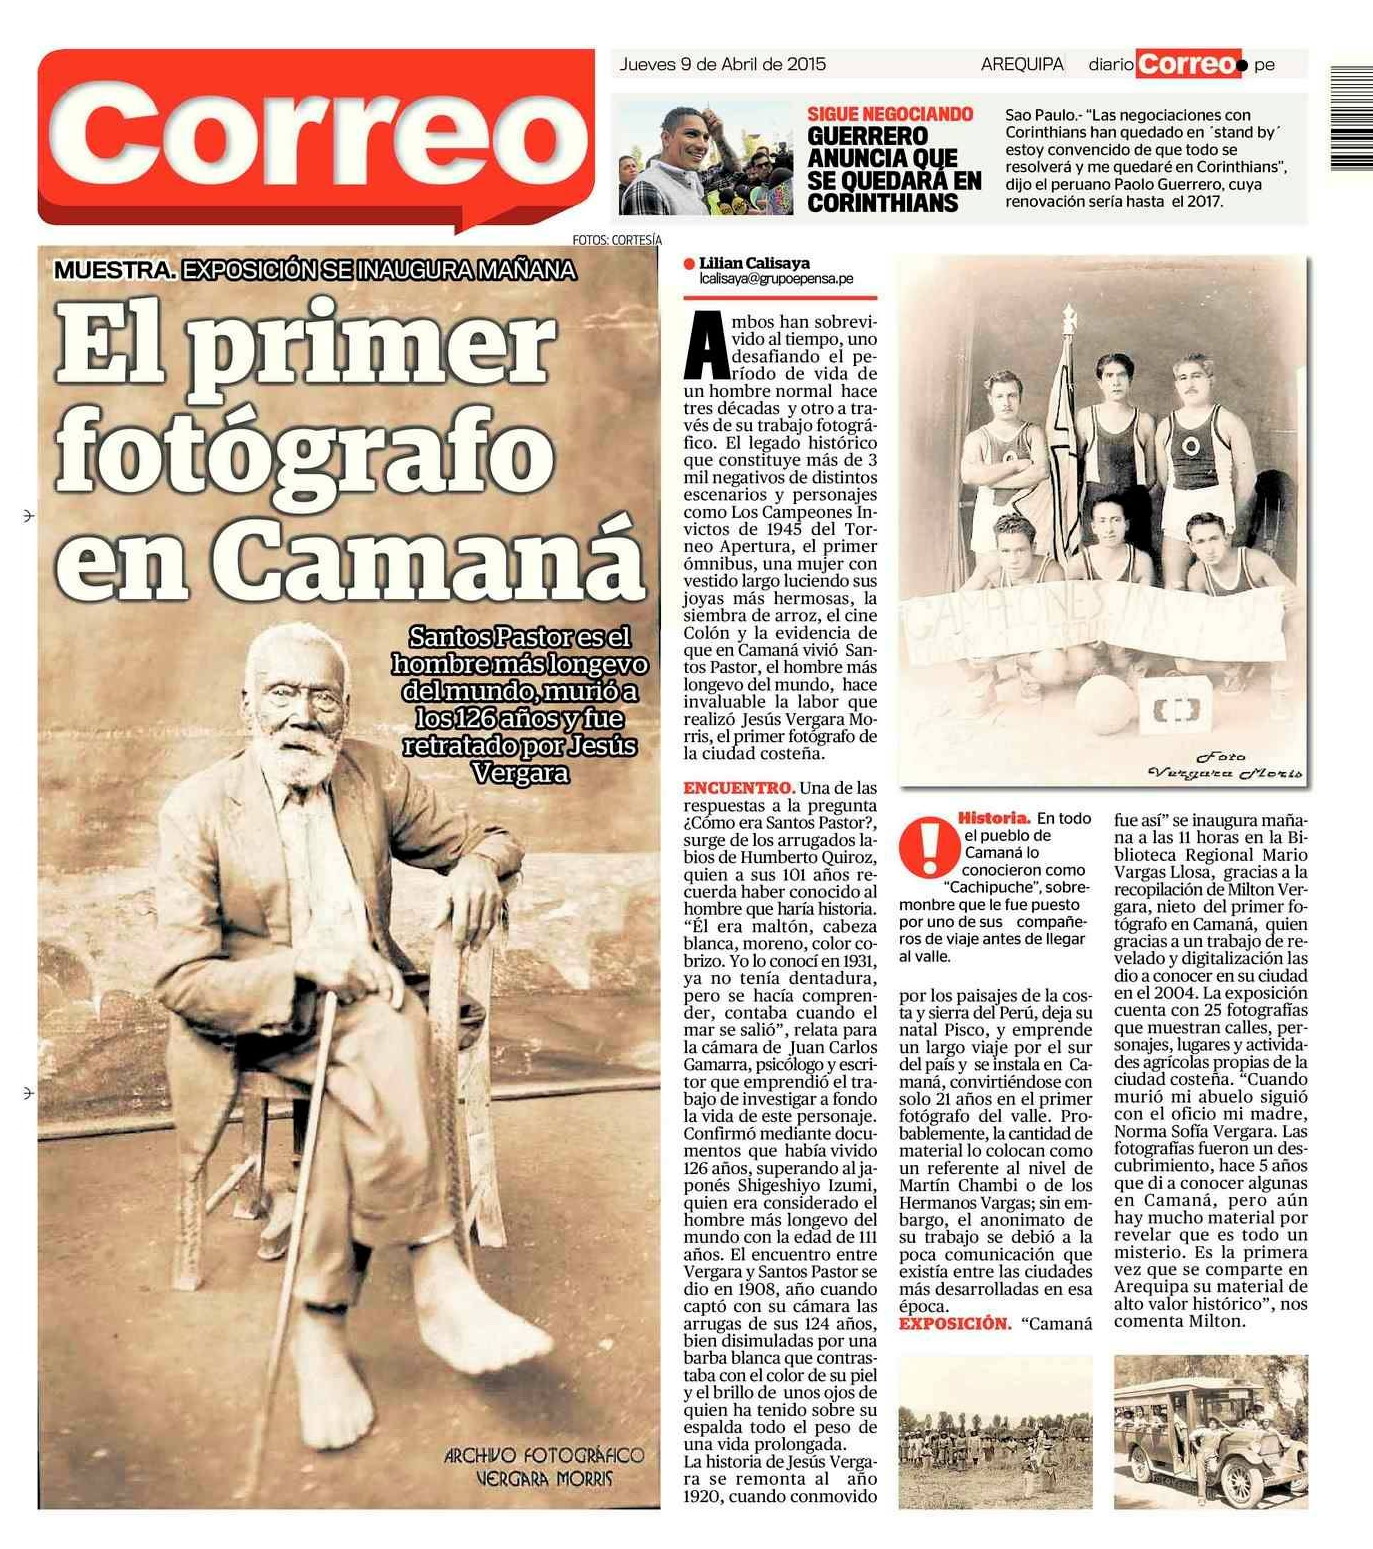 Diario Correo, 09 de abril 2015. Contraportada